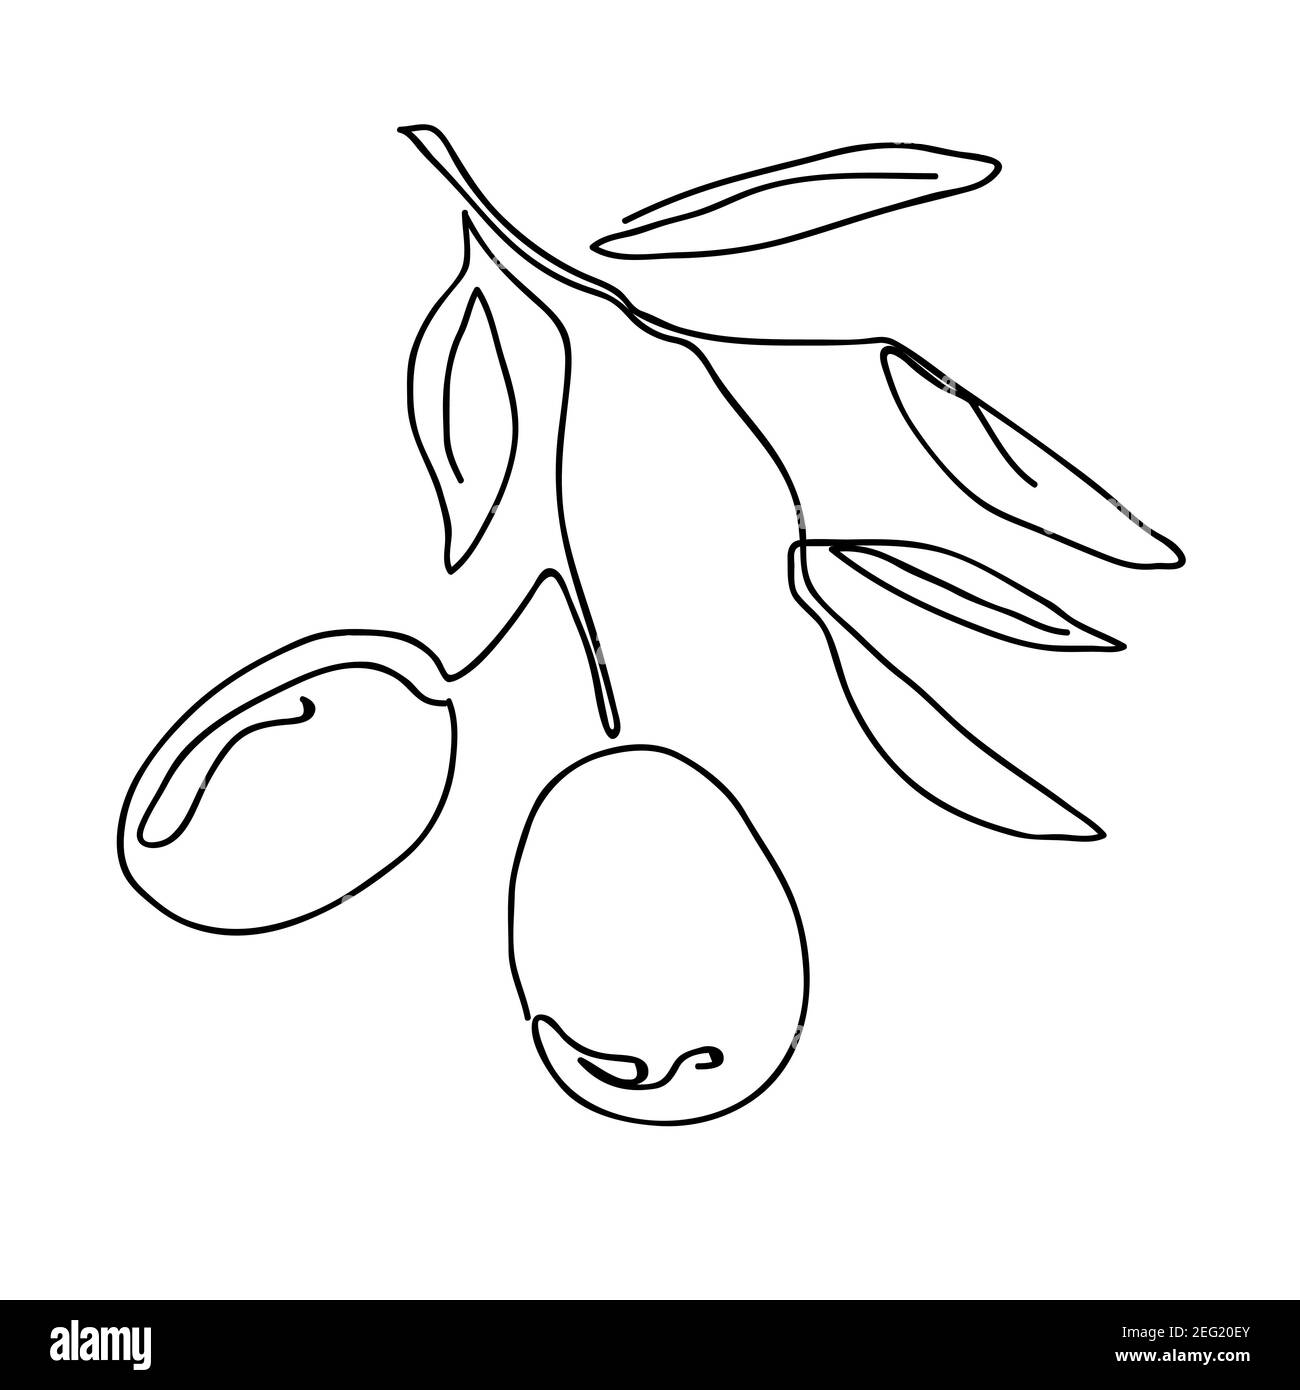 Un seul dessin de ligne continue de brunch aux fruits d'olive biologiques. Dessin moderne à une ligne dessin graphique illustration vectorielle Illustration de Vecteur